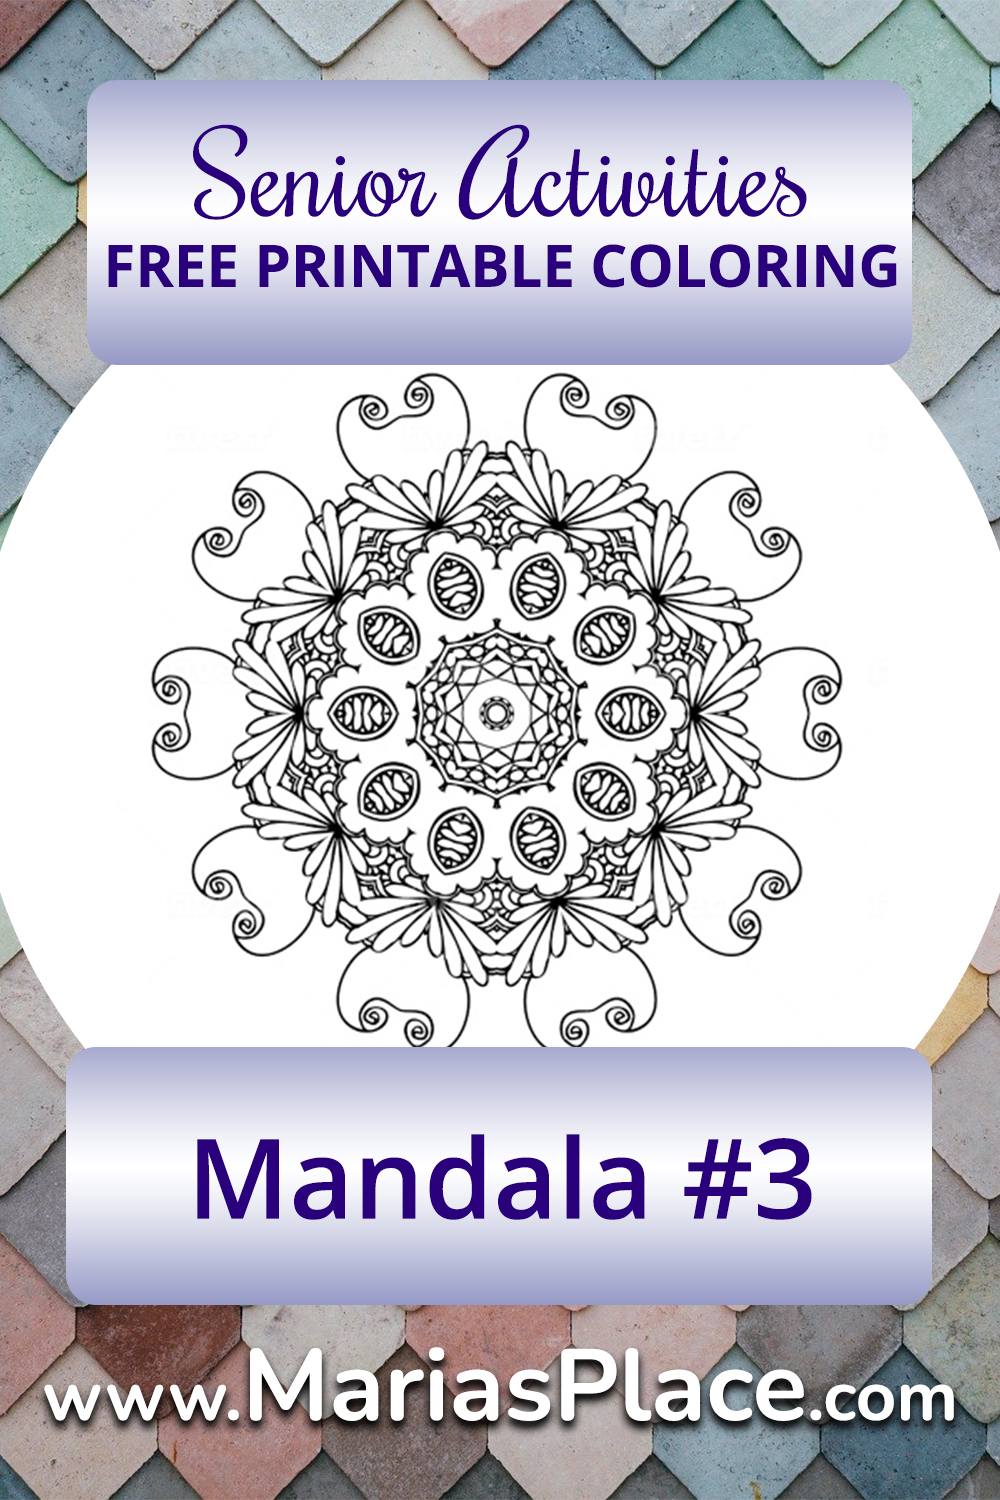 Mandala #3